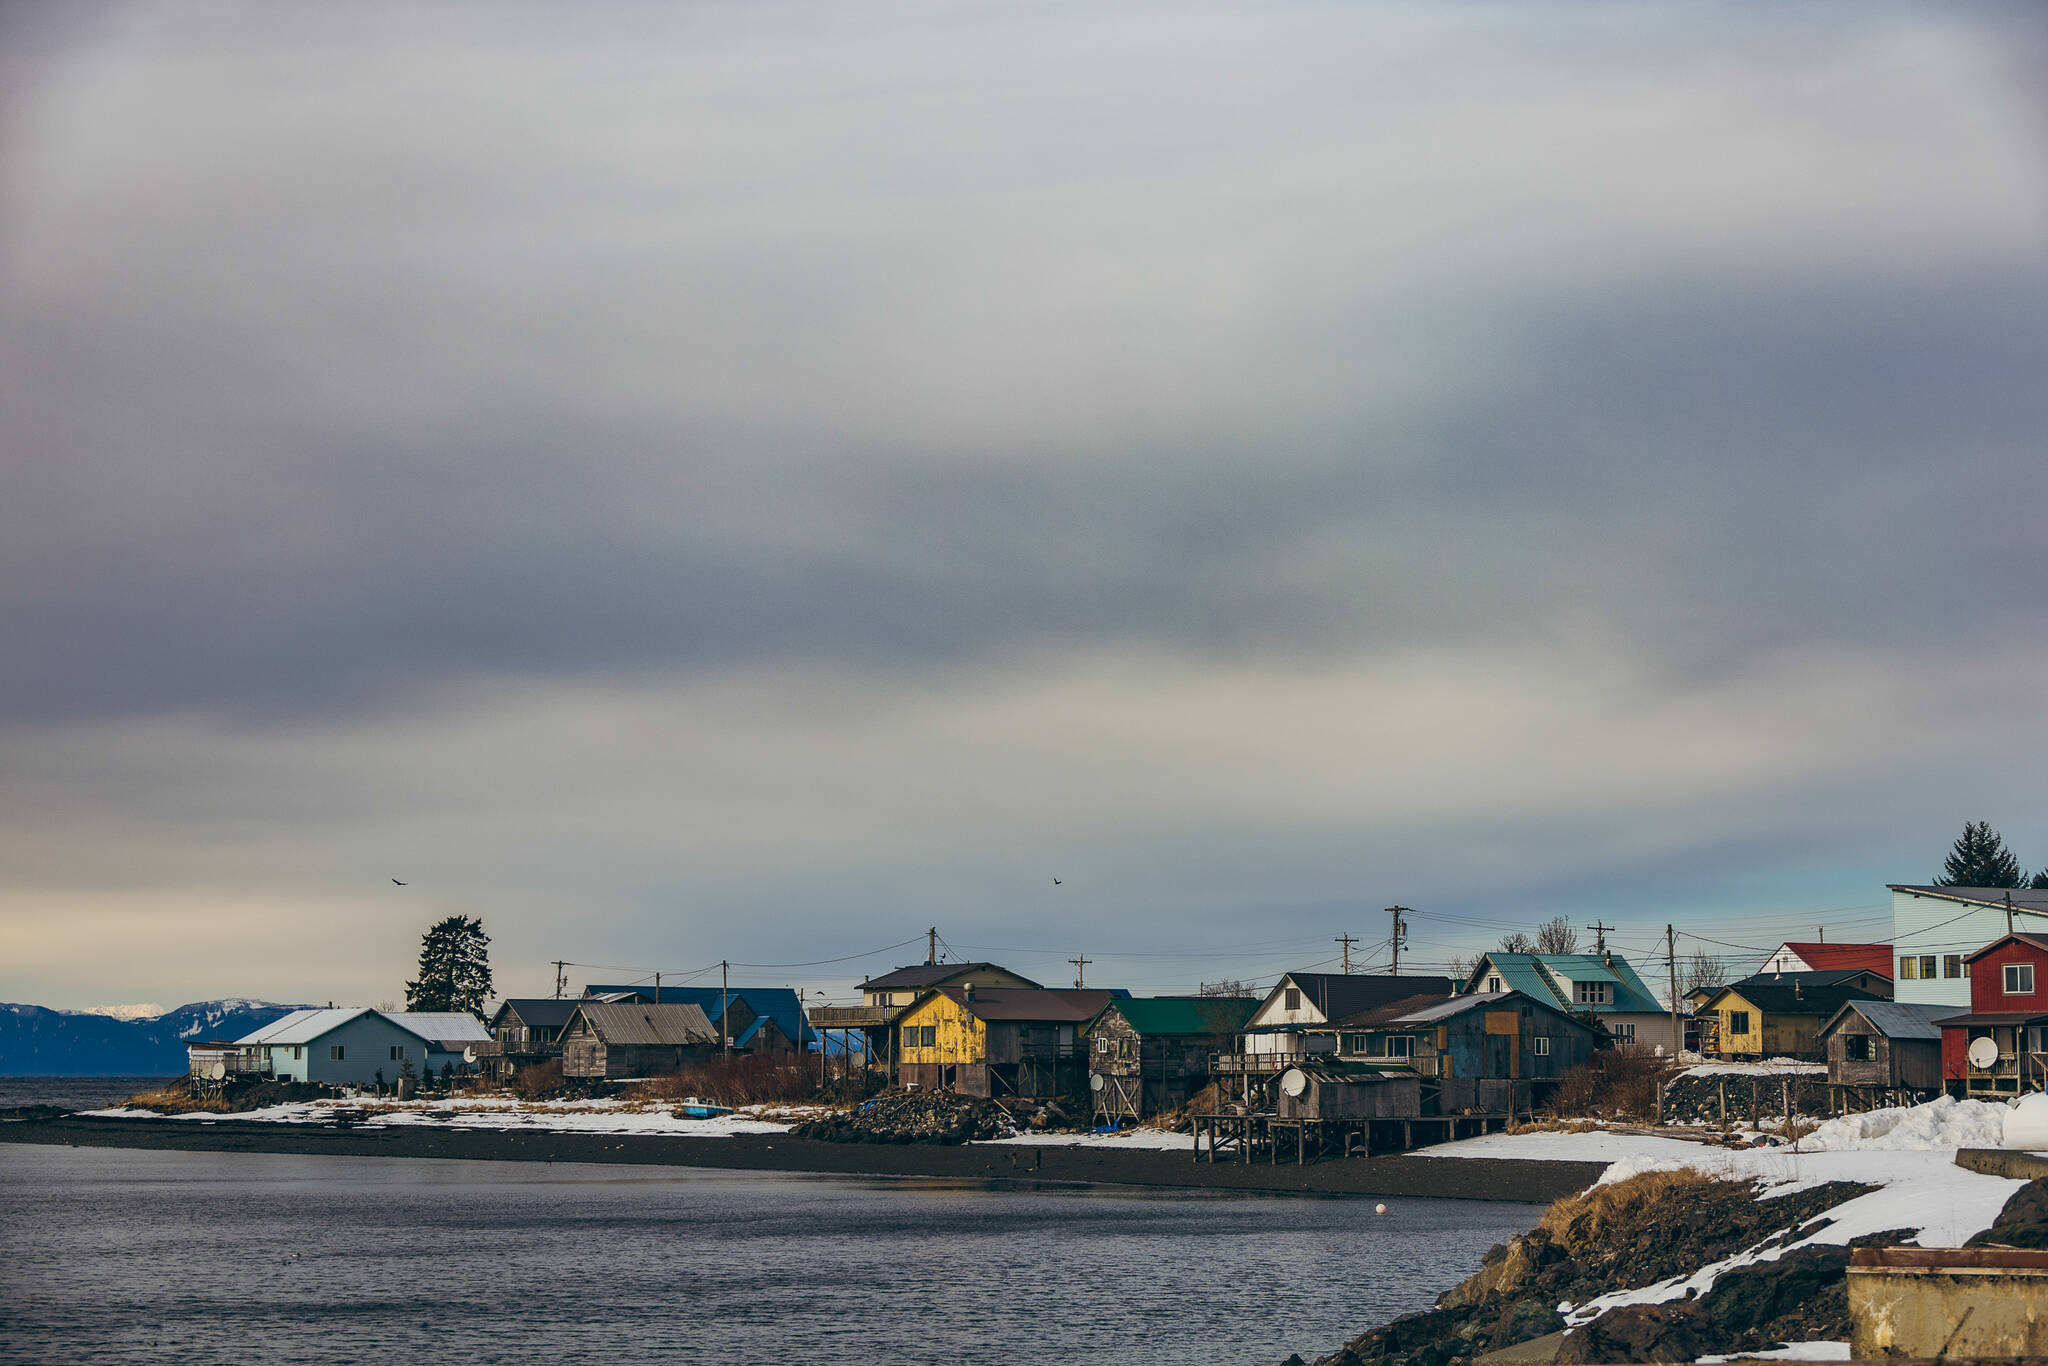 Kake, (Ḵéex̱ʼ) is a Tlingit community of around 600 people located on Kupreanof Island on Keku Strait. (Courtesy Photo / Muriel Reid)